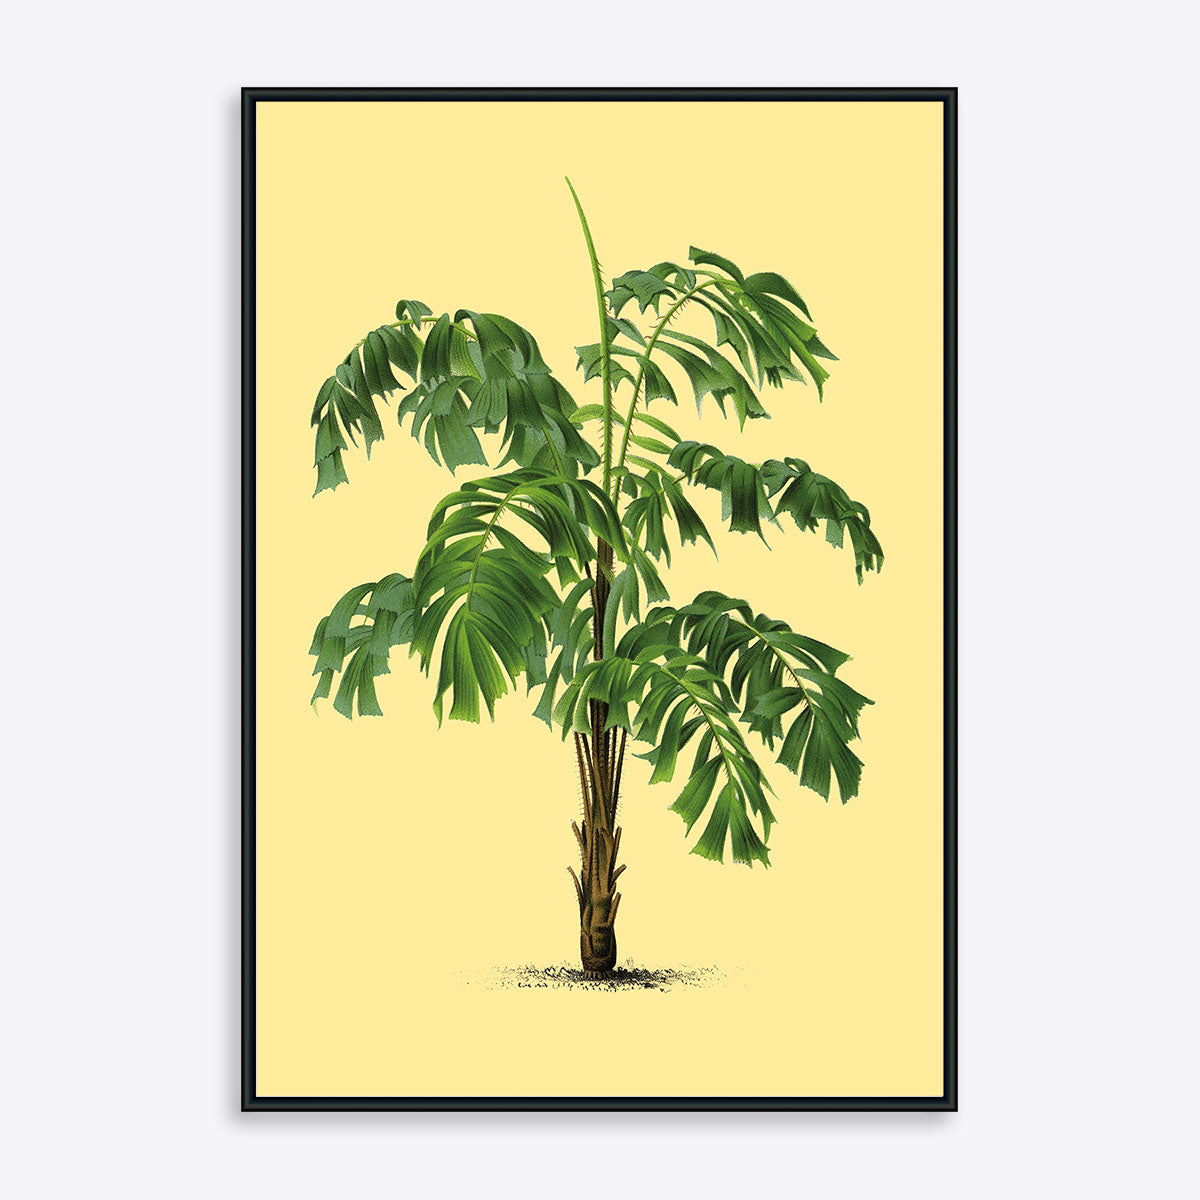 Plakat af palme på gul baggrund